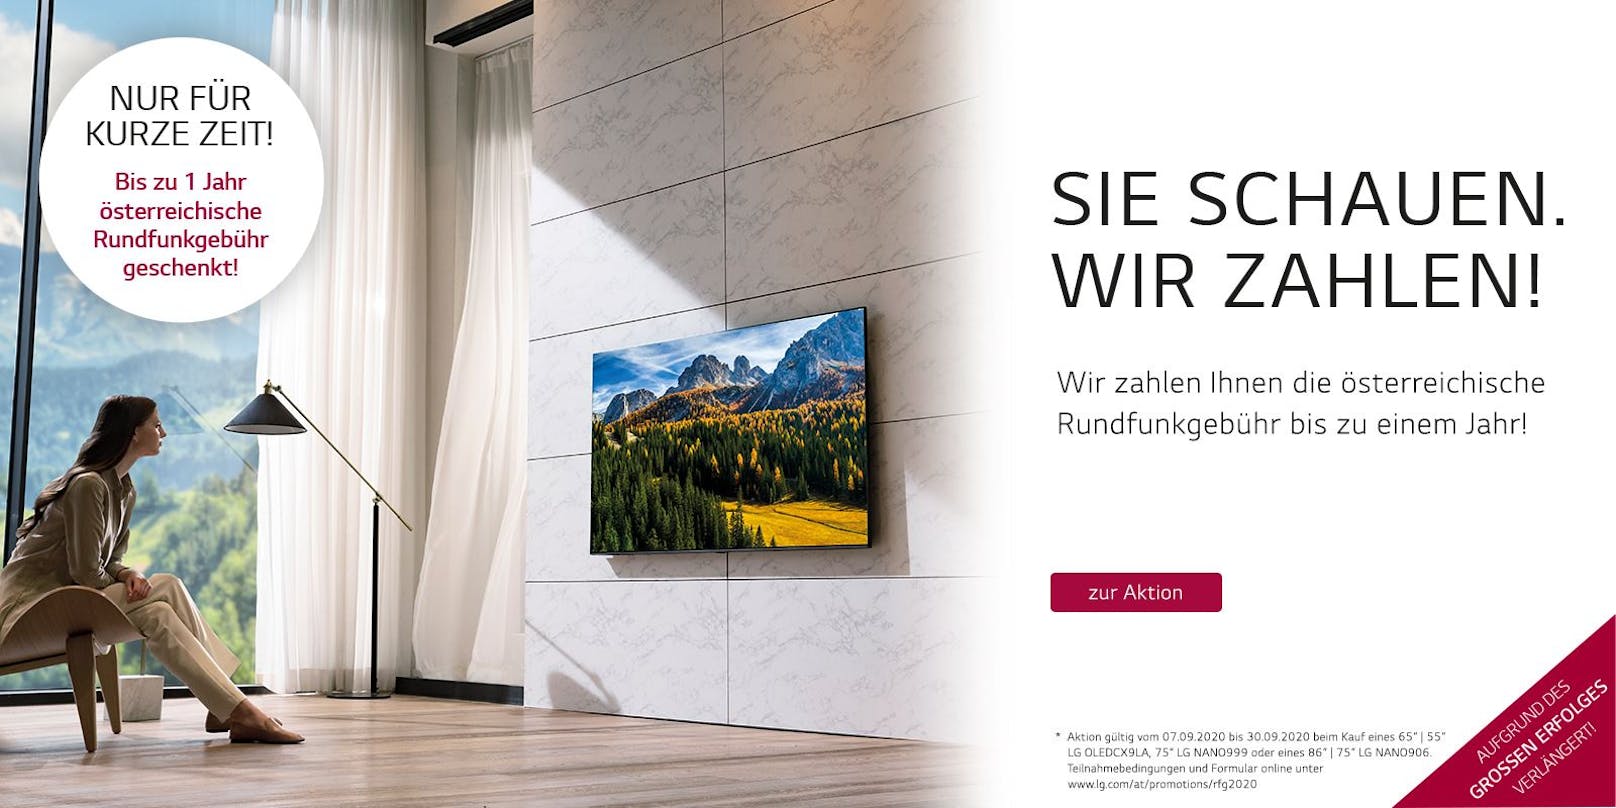 Bis zu 320 Euro geschenkt beim Kauf ausgewählter LG Smart TVs.